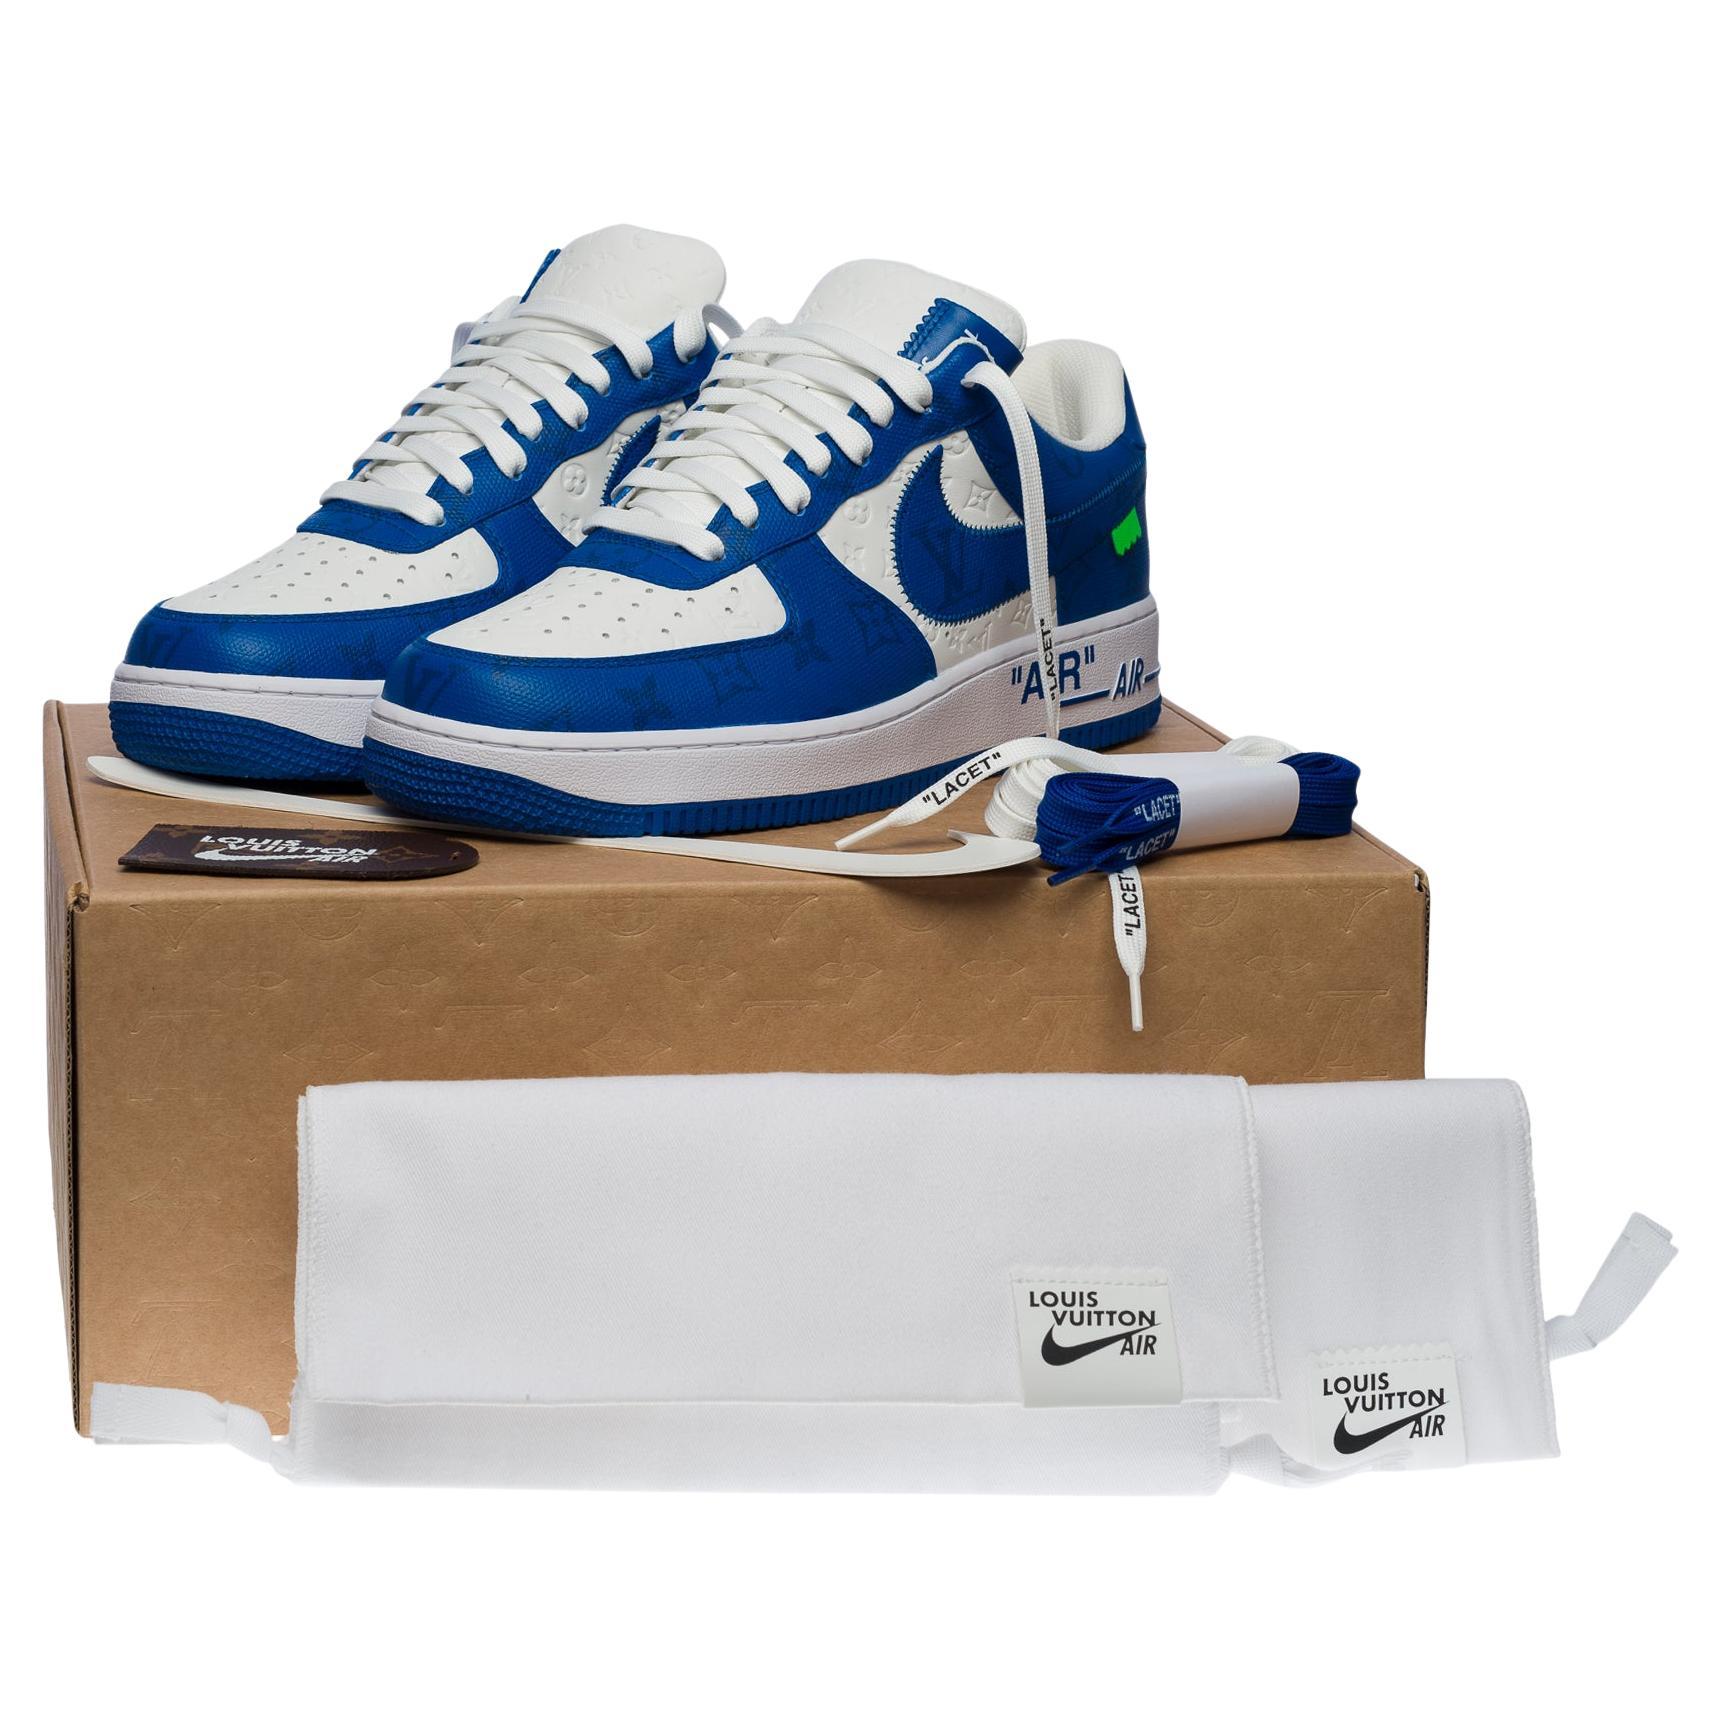 Baskets neuves « Air Force 1 » de Nike x Louis Vuitton par V. Abloh en blanc et bleu